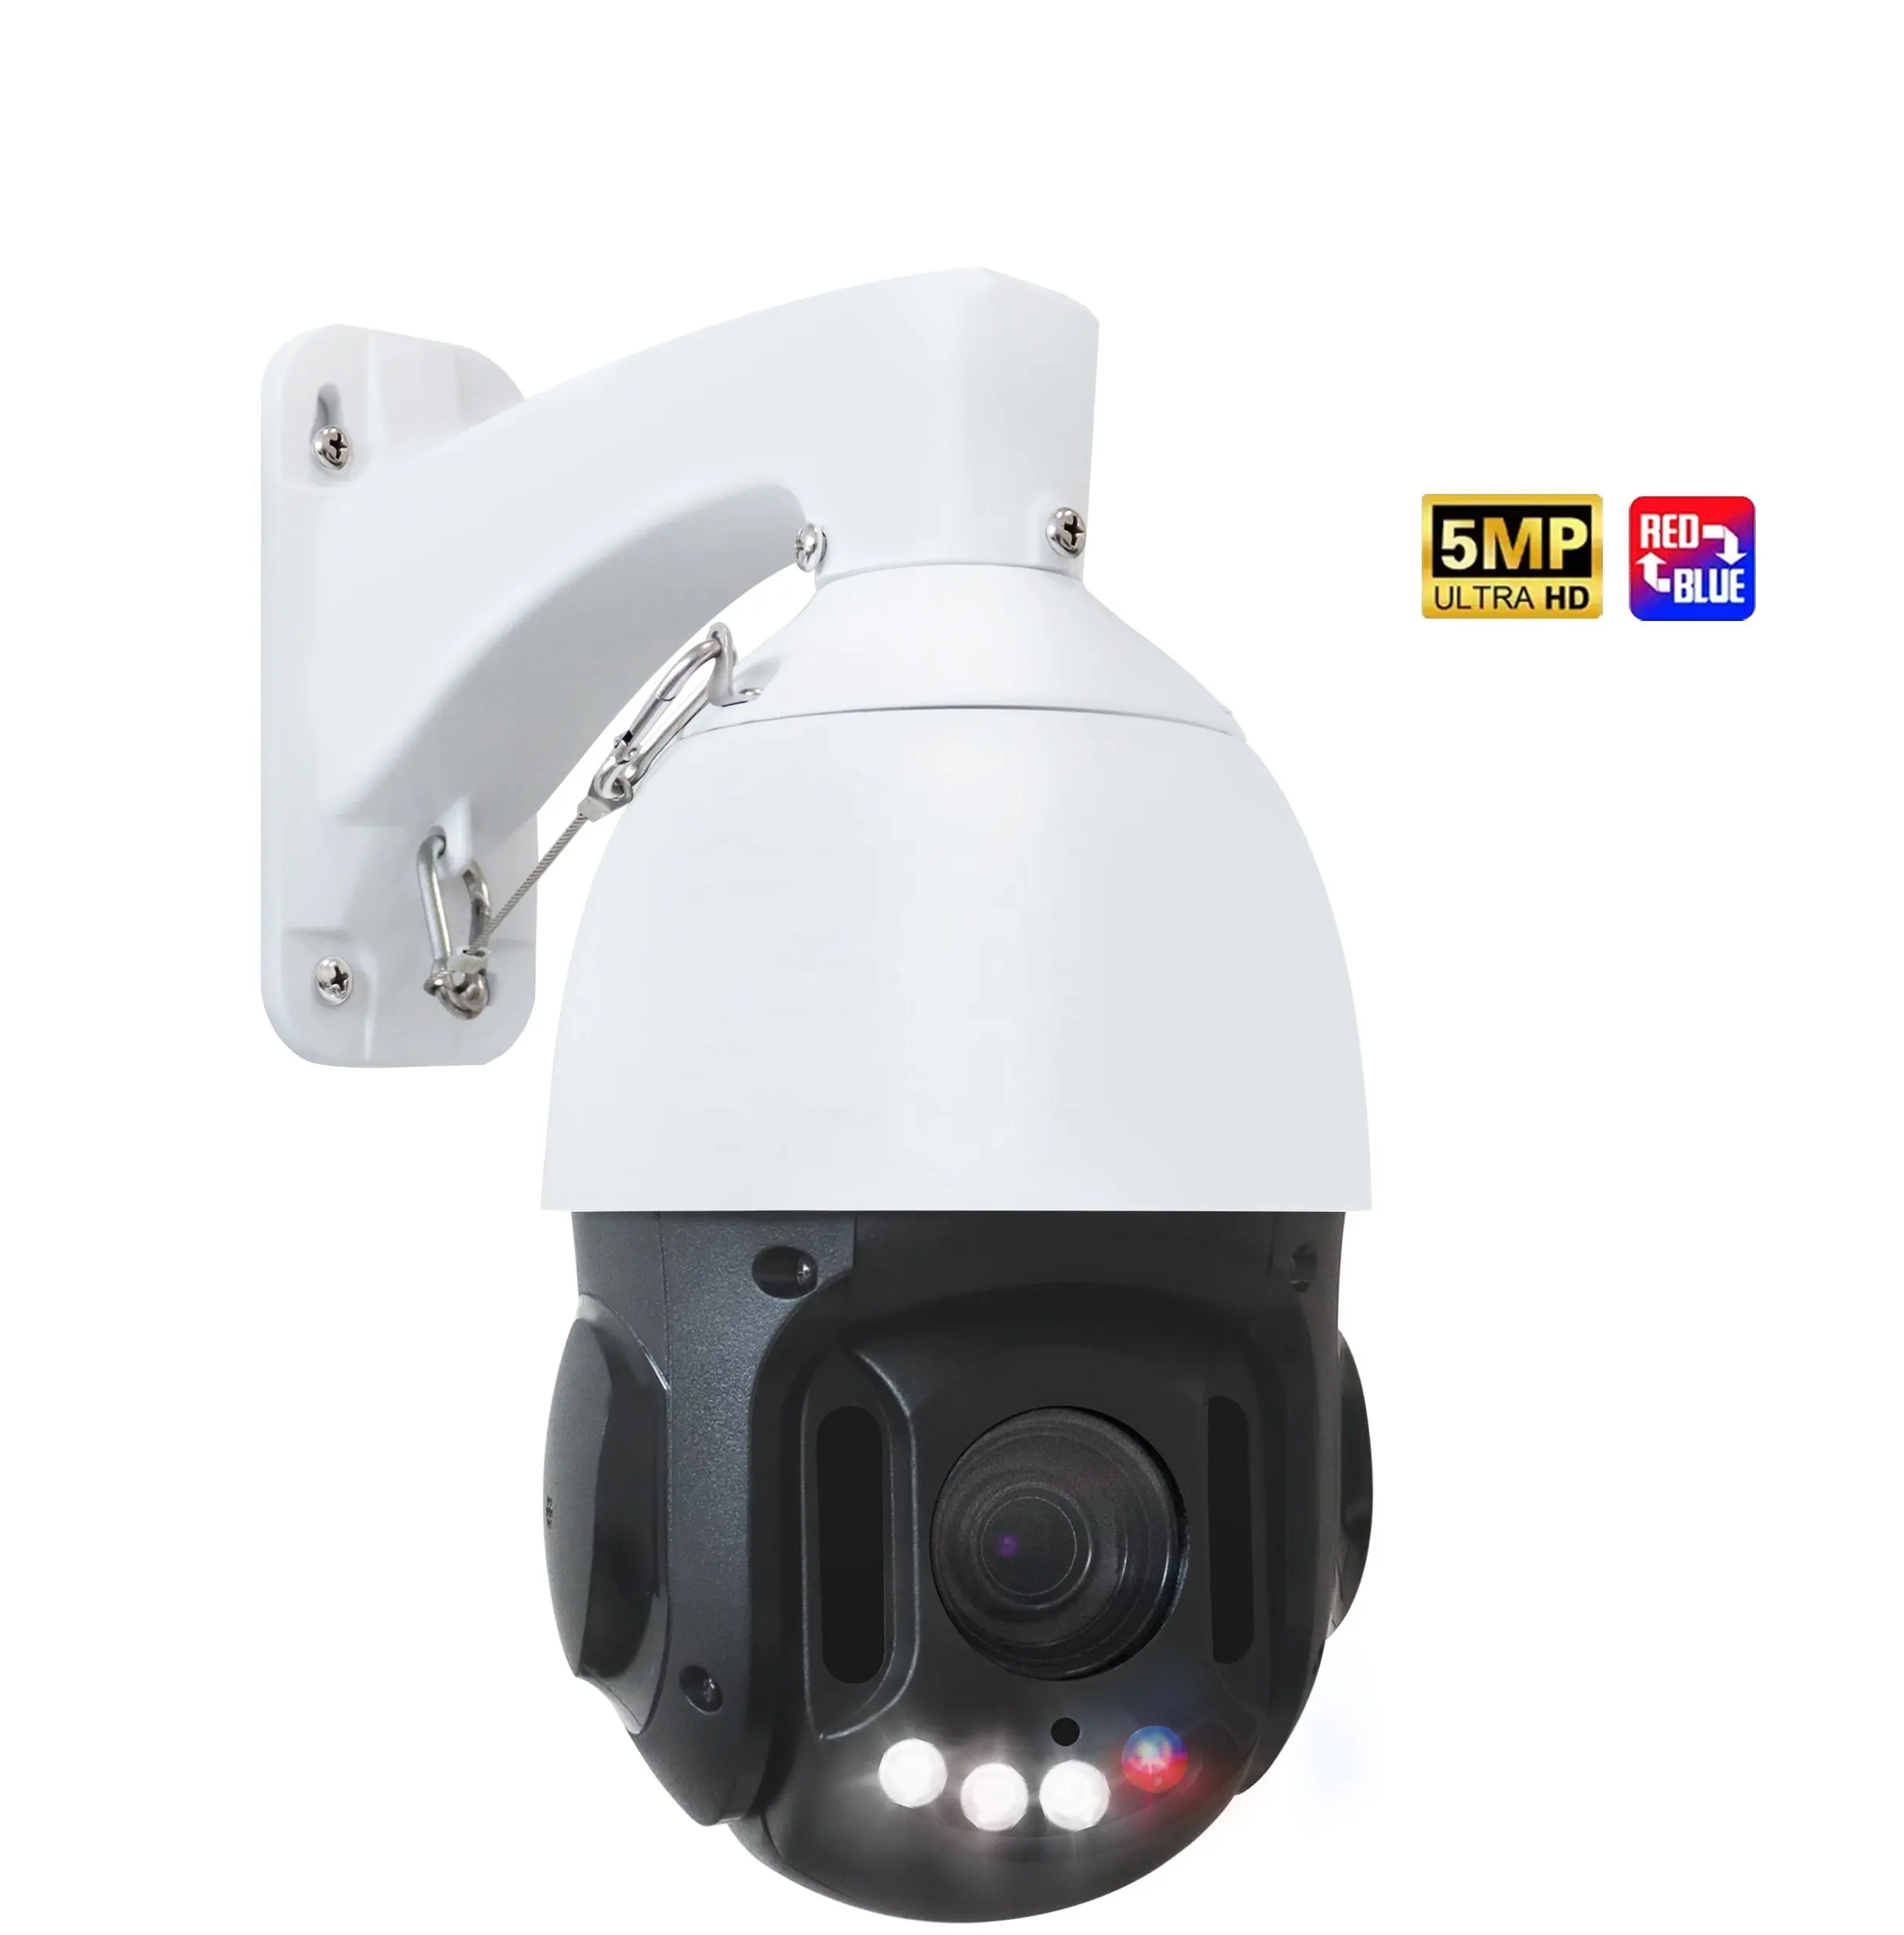 Uniview 20X Kamera CCTV perbesaran optik, kamera IP 5 MP 30fps ganda lampu LED Alarm suara kamera PTZ